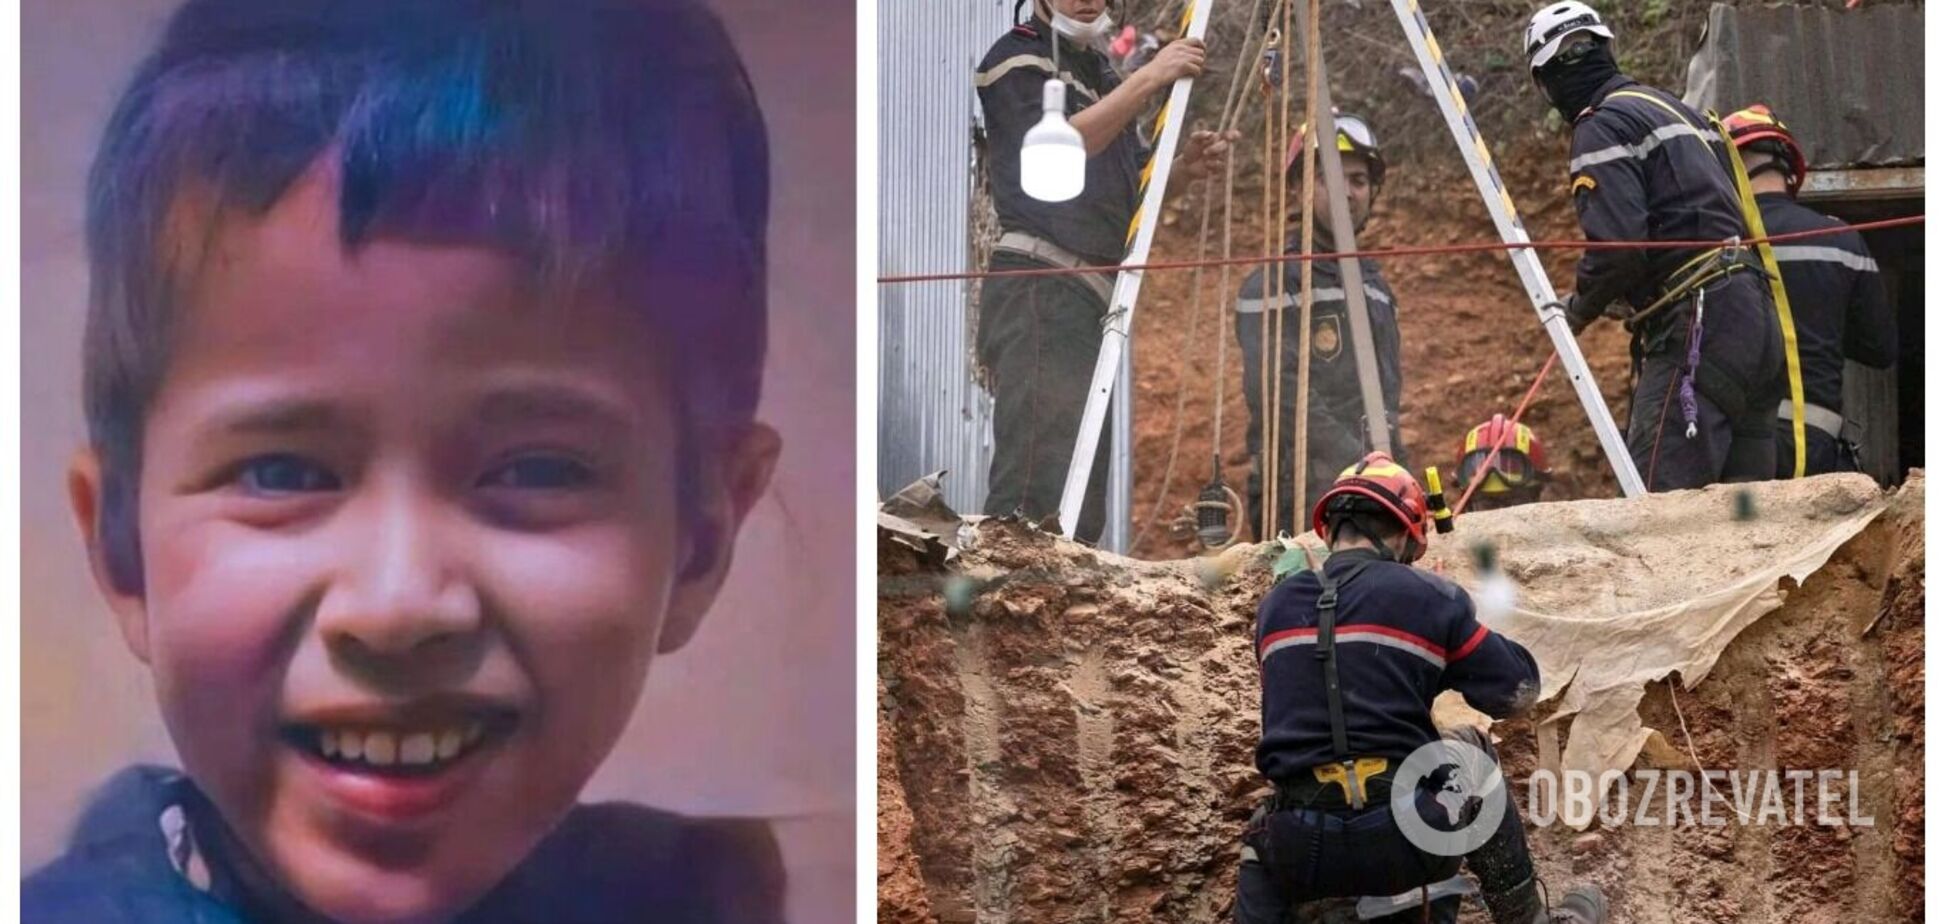 Как спасается мальчик. Мальчик который упал в колодец в Марокко 32 метровый. Мальчик из Марокко.